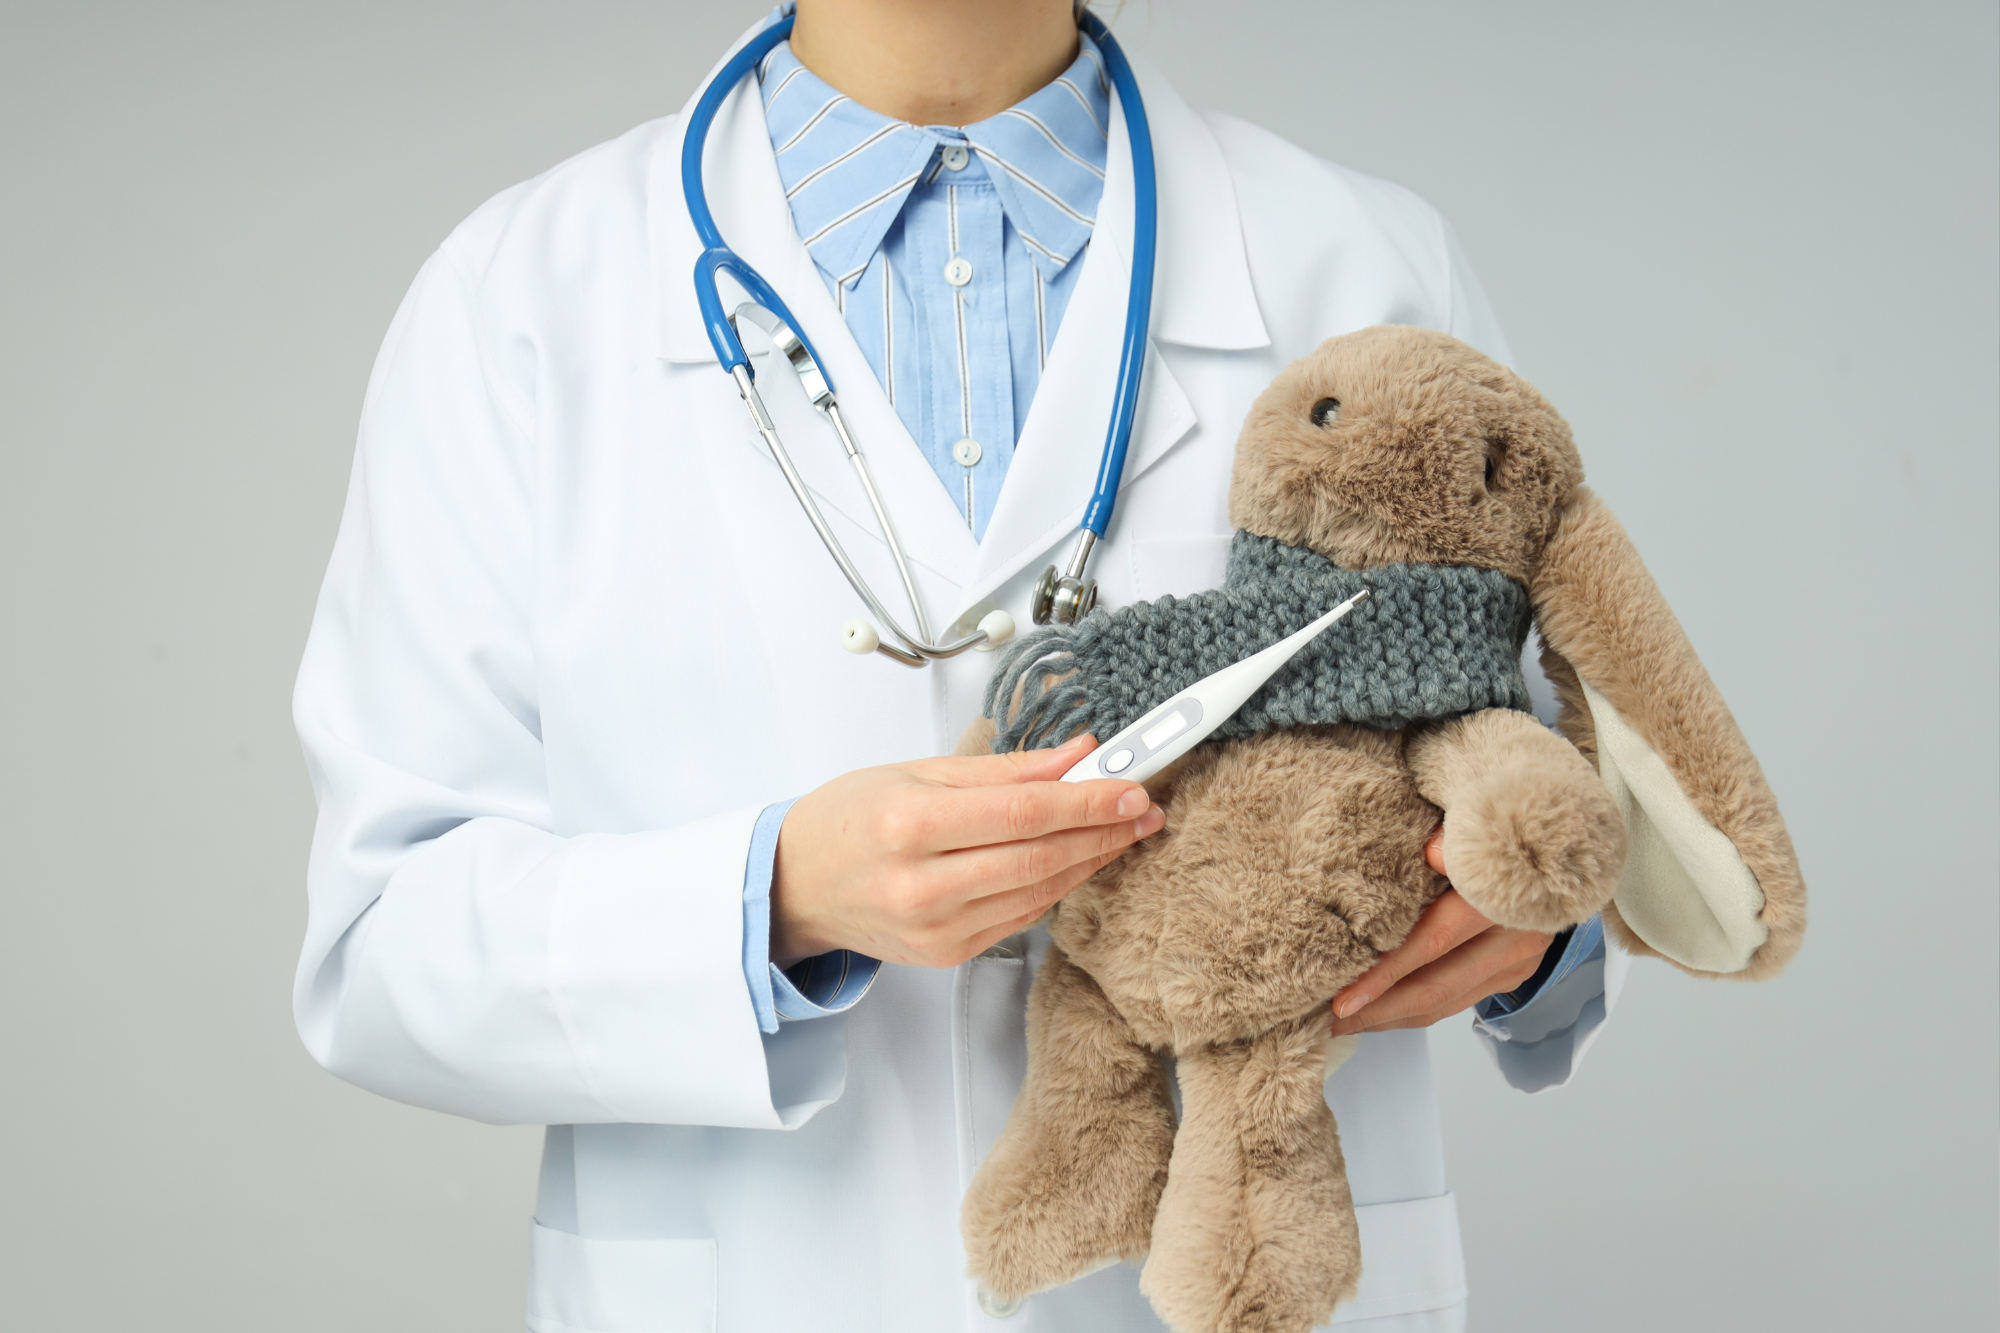 Arriva la triade ‘influenza-bronchiolite-Covid’, i consigli degli esperti per proteggere i bimbi